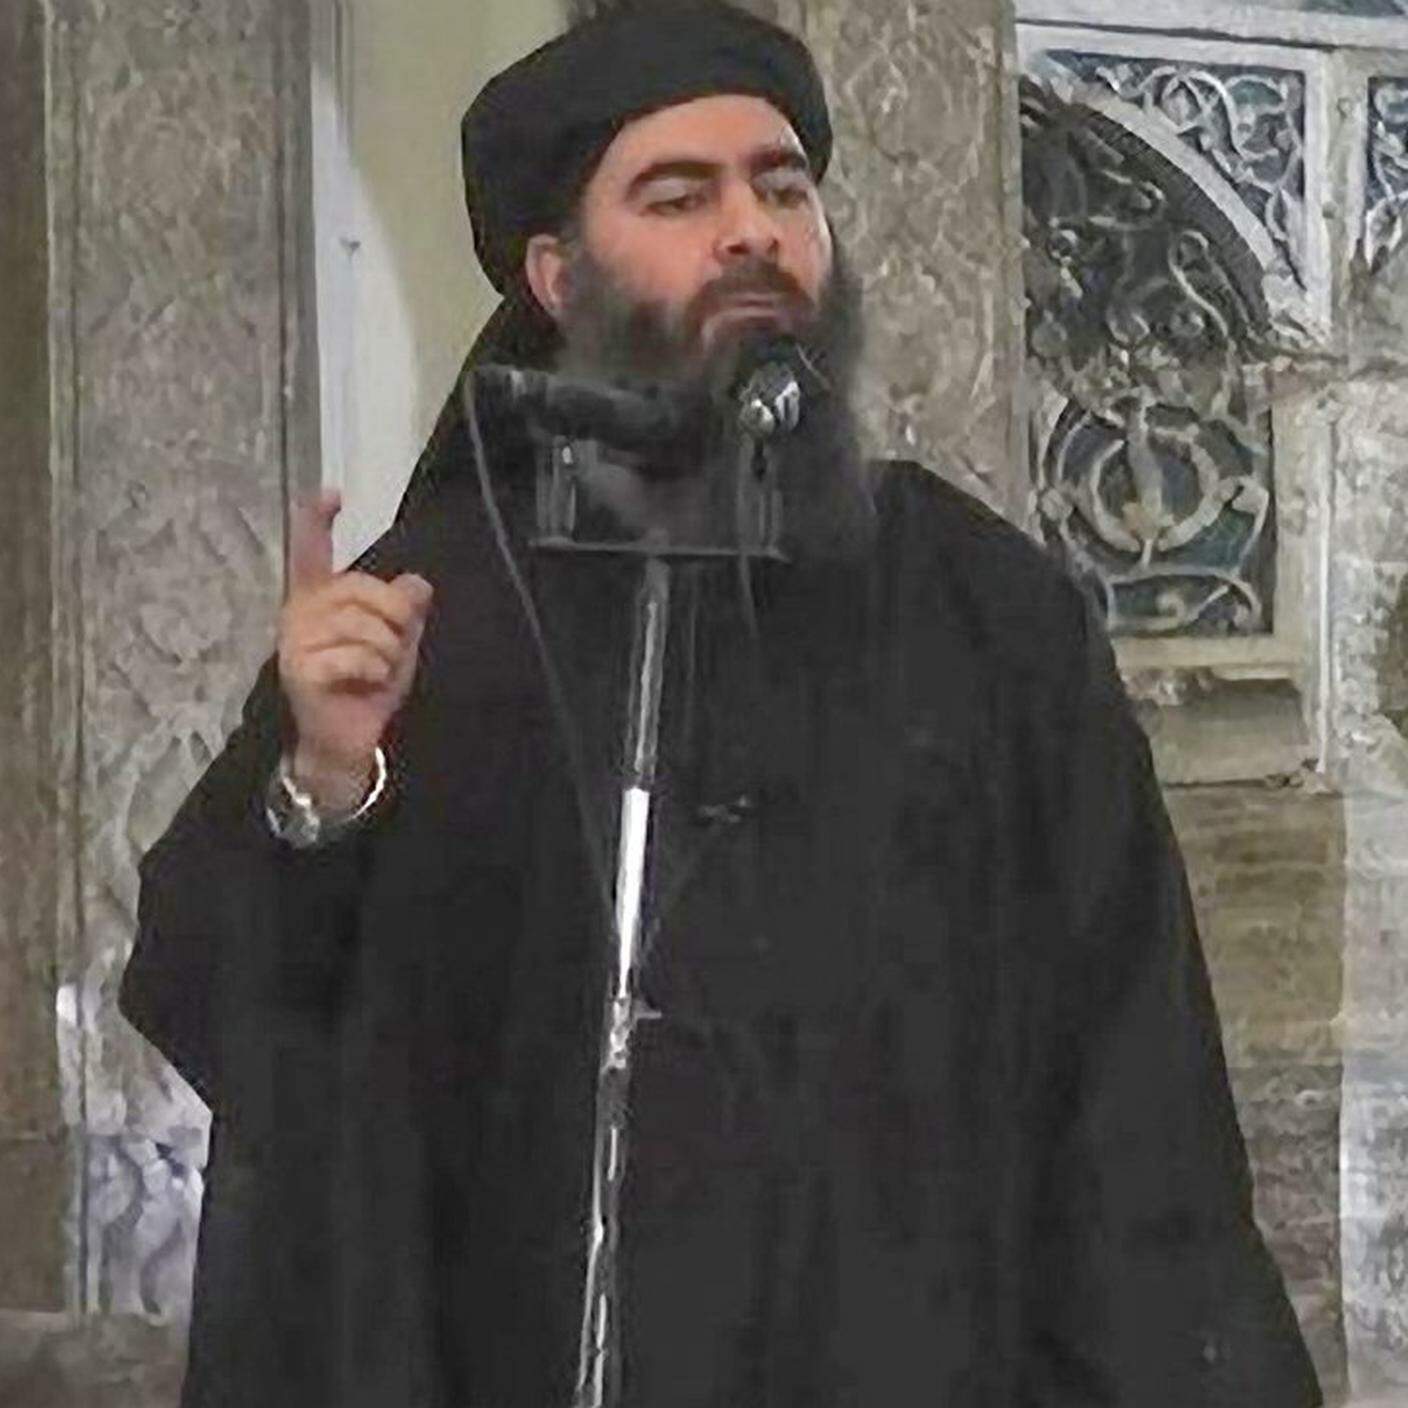 Abu Bakr al-Baghdadi ha rifondato il Califfato nell'estate 2014. "L'effetto retorico della sua prima apparizione fu magistrale; richiamò la tradizione delle parole e dei gesti del Profeta", spiega Salazar